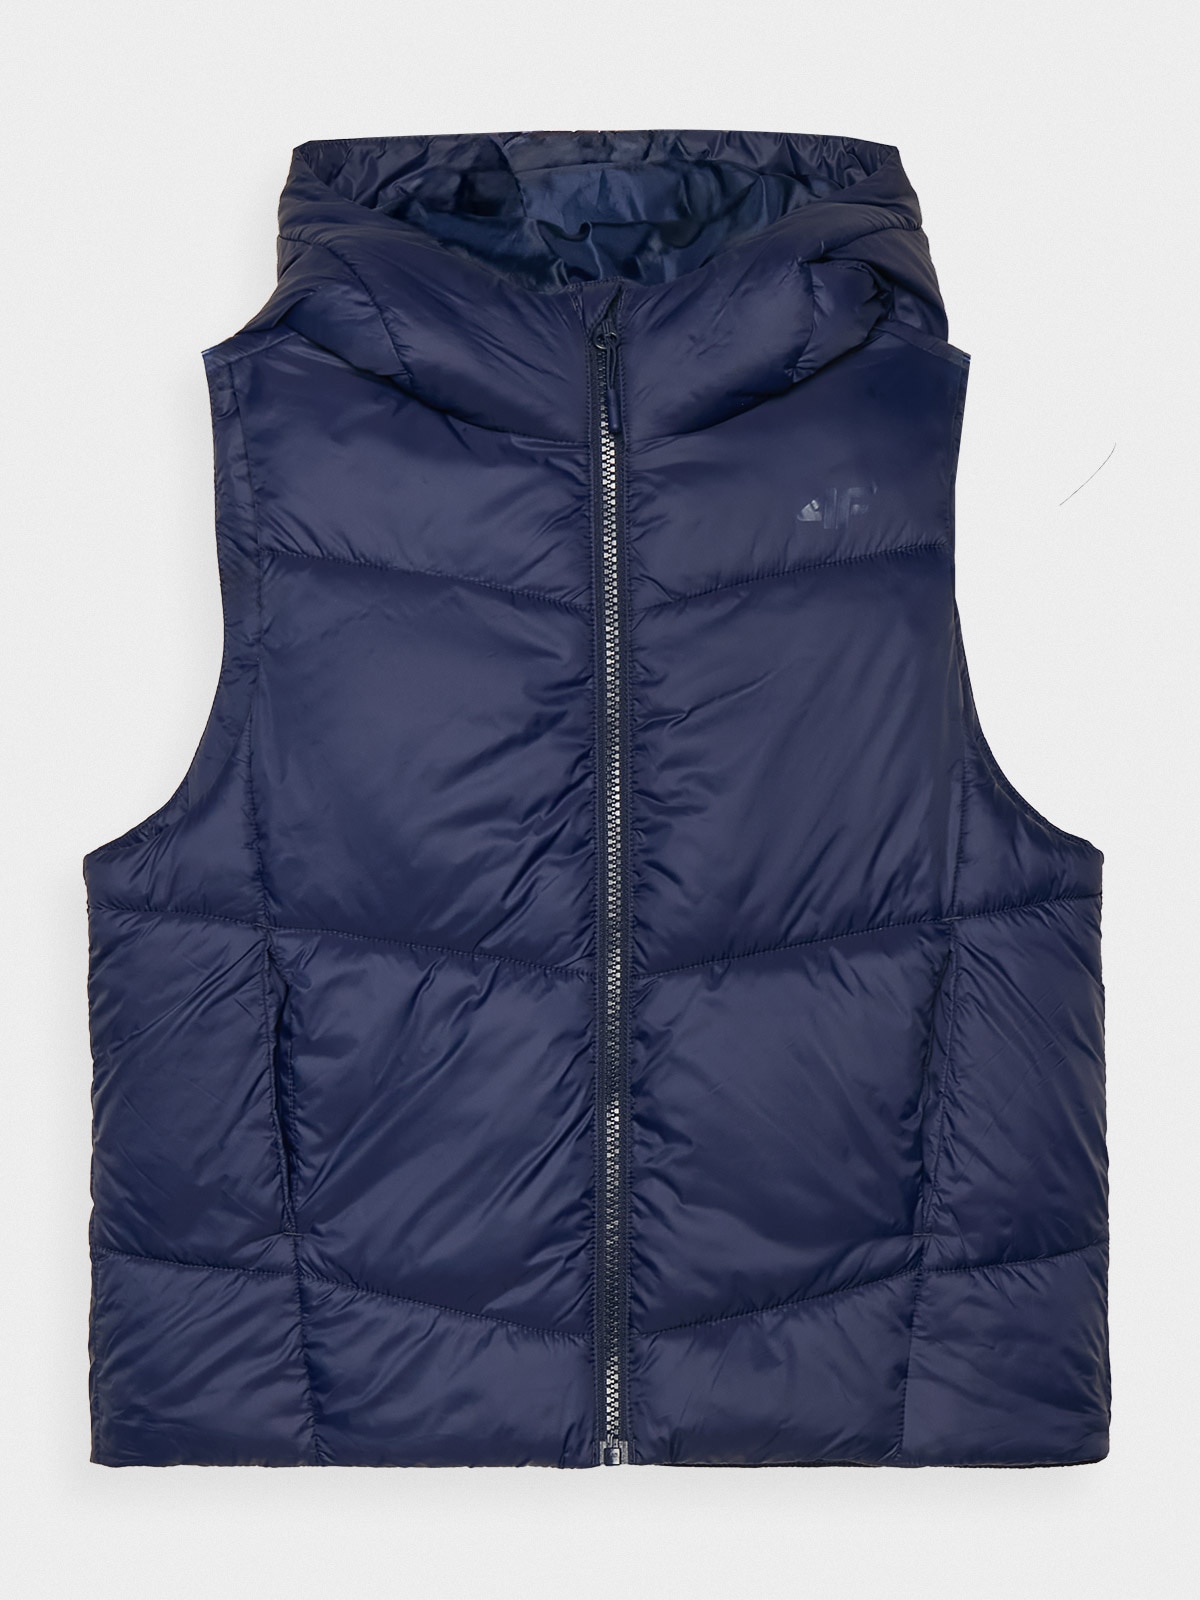 Chlapecká prošívaná péřová vesta s kapucí - tmavě modrá